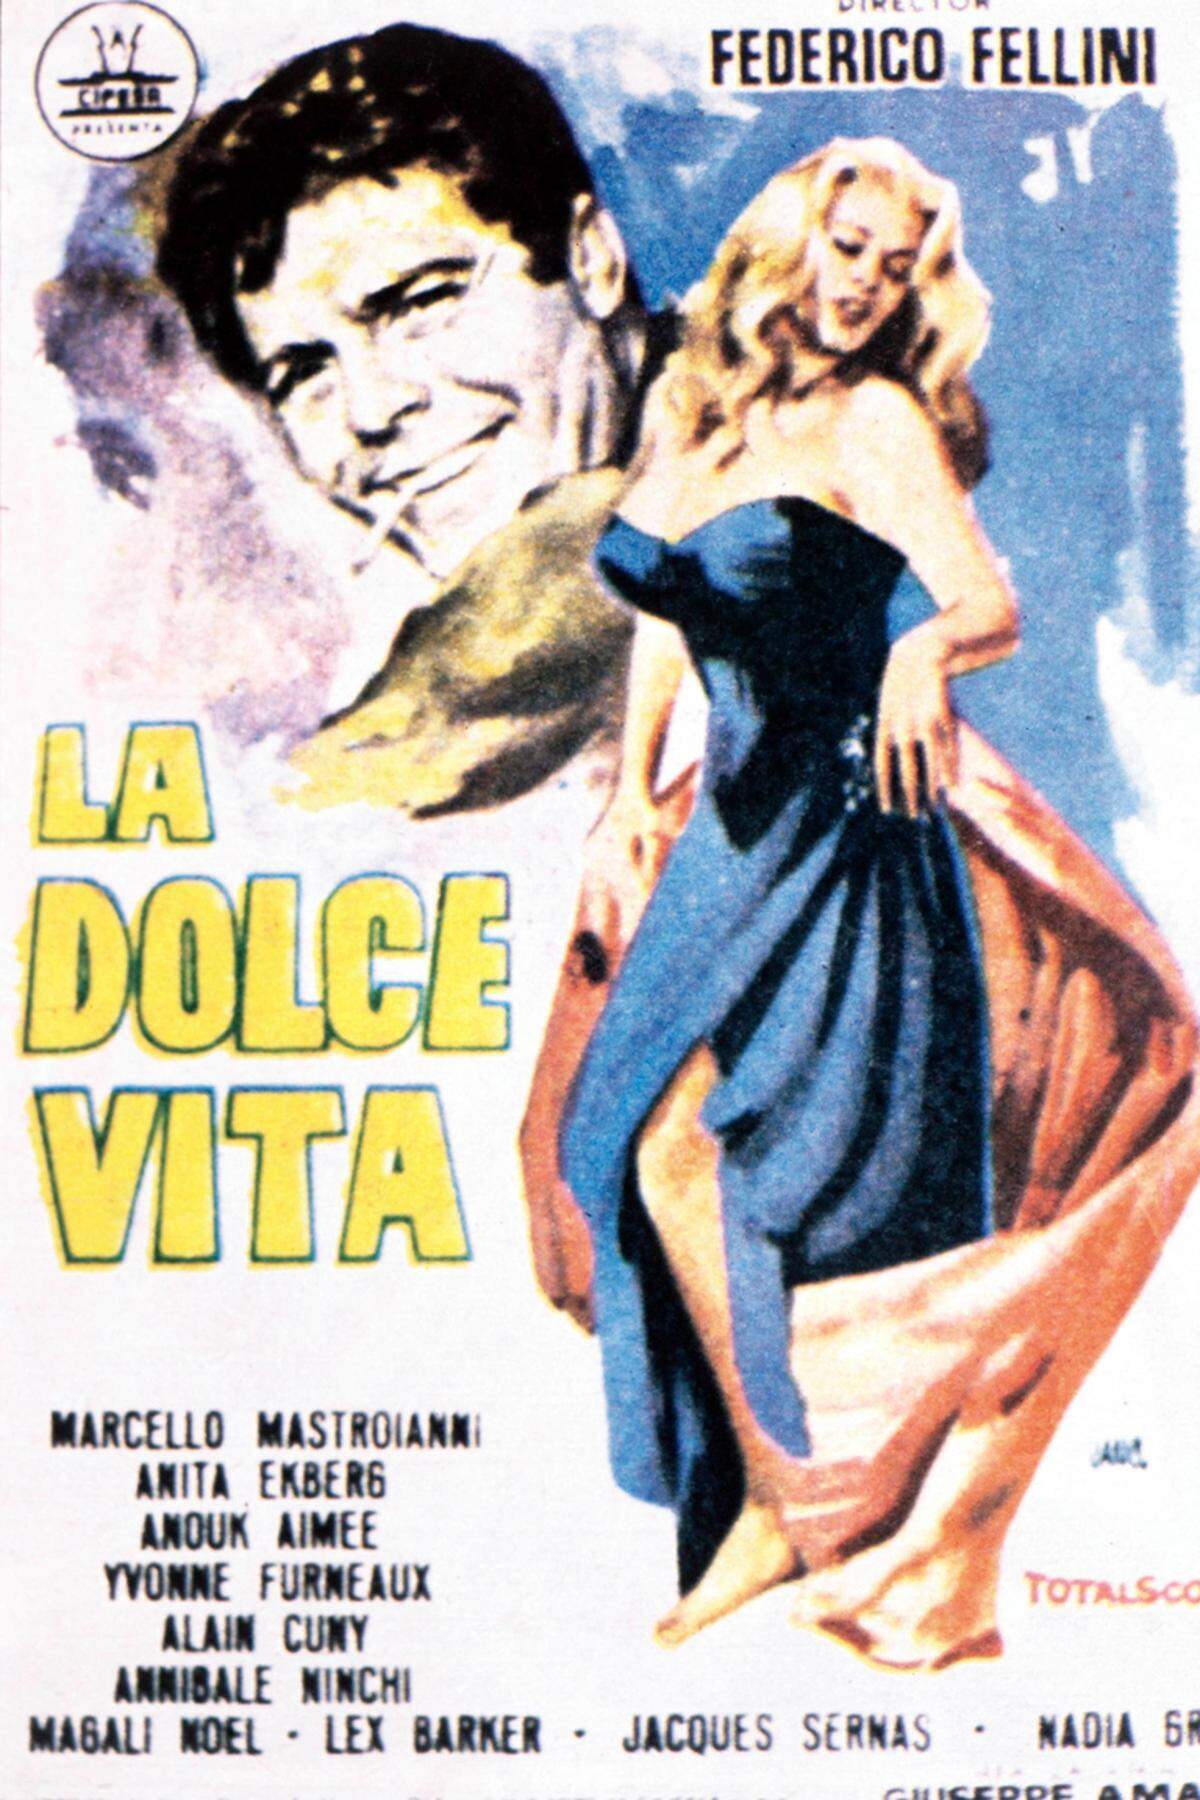 1958 folgte dann der erste Film in Italien, wo sie die Männerwelt noch mehr in Aufregung versetzten als anderswo. Ein Jahr später wurde "La Dolce Vita" mit dem Trevi-Bad der Höhepunkt in Ekbergs Filmkarriere. Die Dreharbeiten blieben ihr in guter Erinnerung, wie sie einmal in einem Interview sagte: "Es war schön, als ich bei 40 Grad nachts in die Fontana di Trevi stieg."